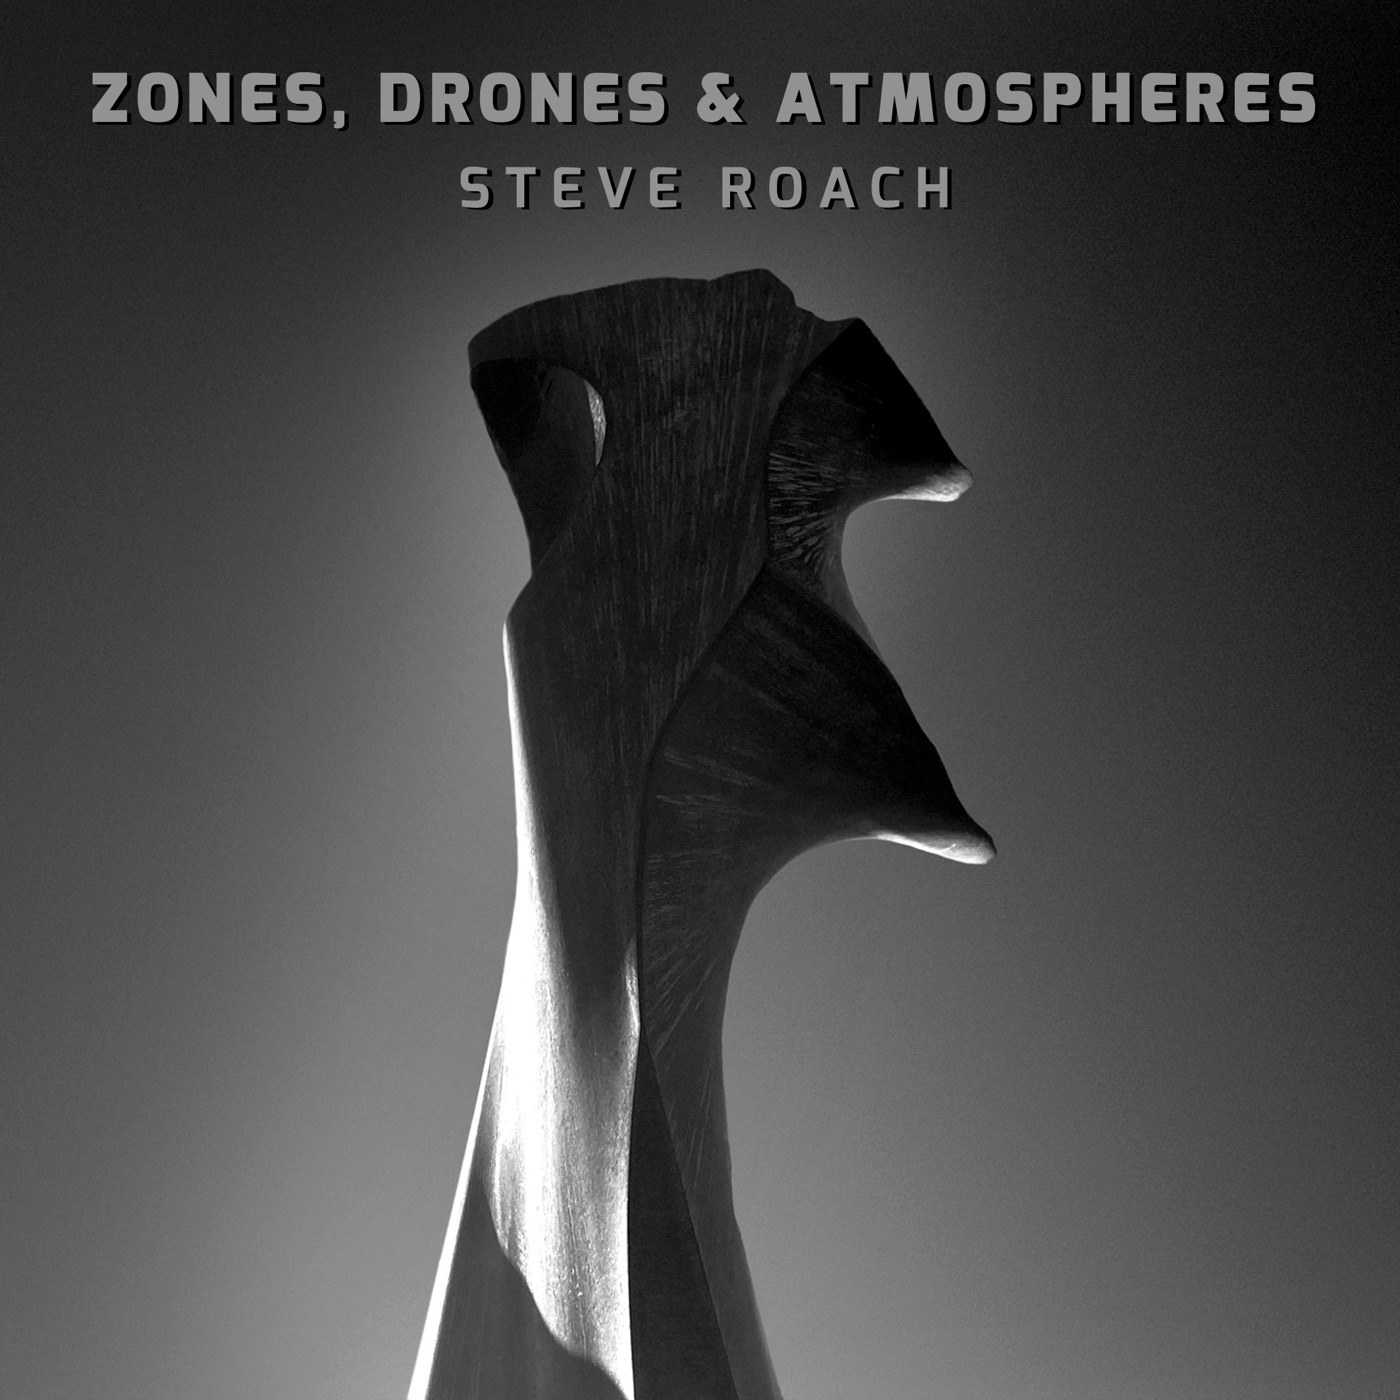 Zones, Drones & Atmospheres by Steve Roach